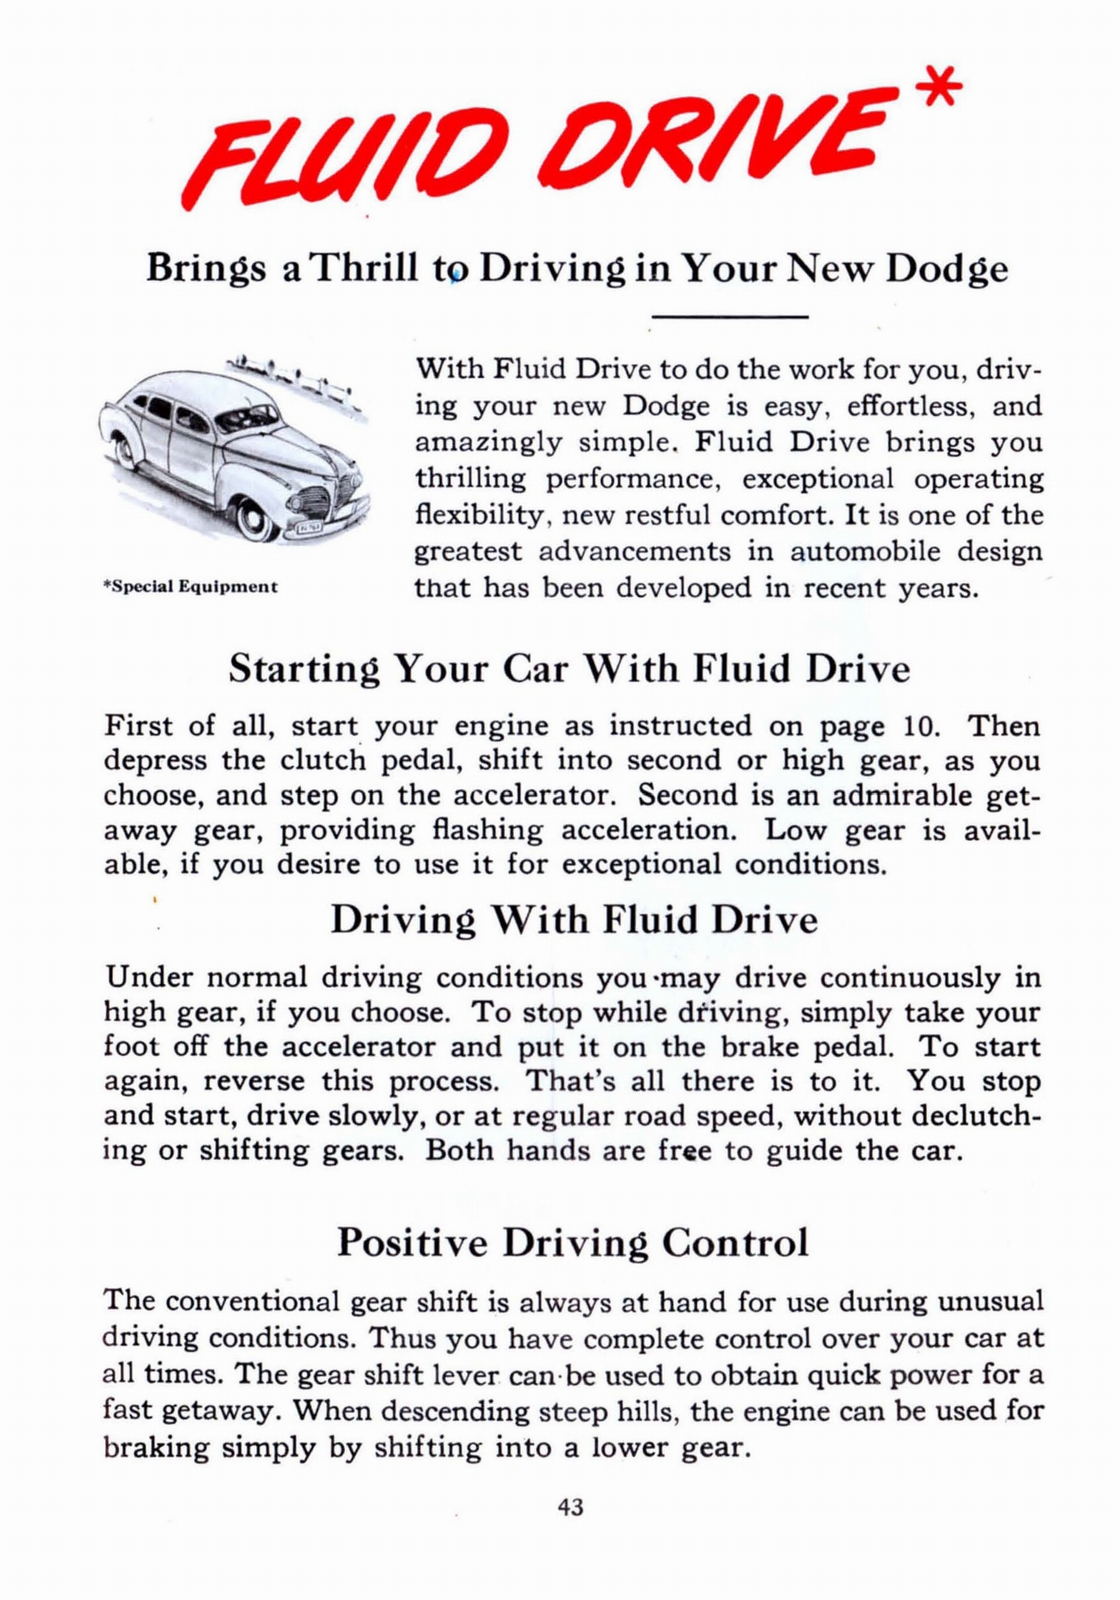 n_1941 Dodge Owners Manual-43.jpg